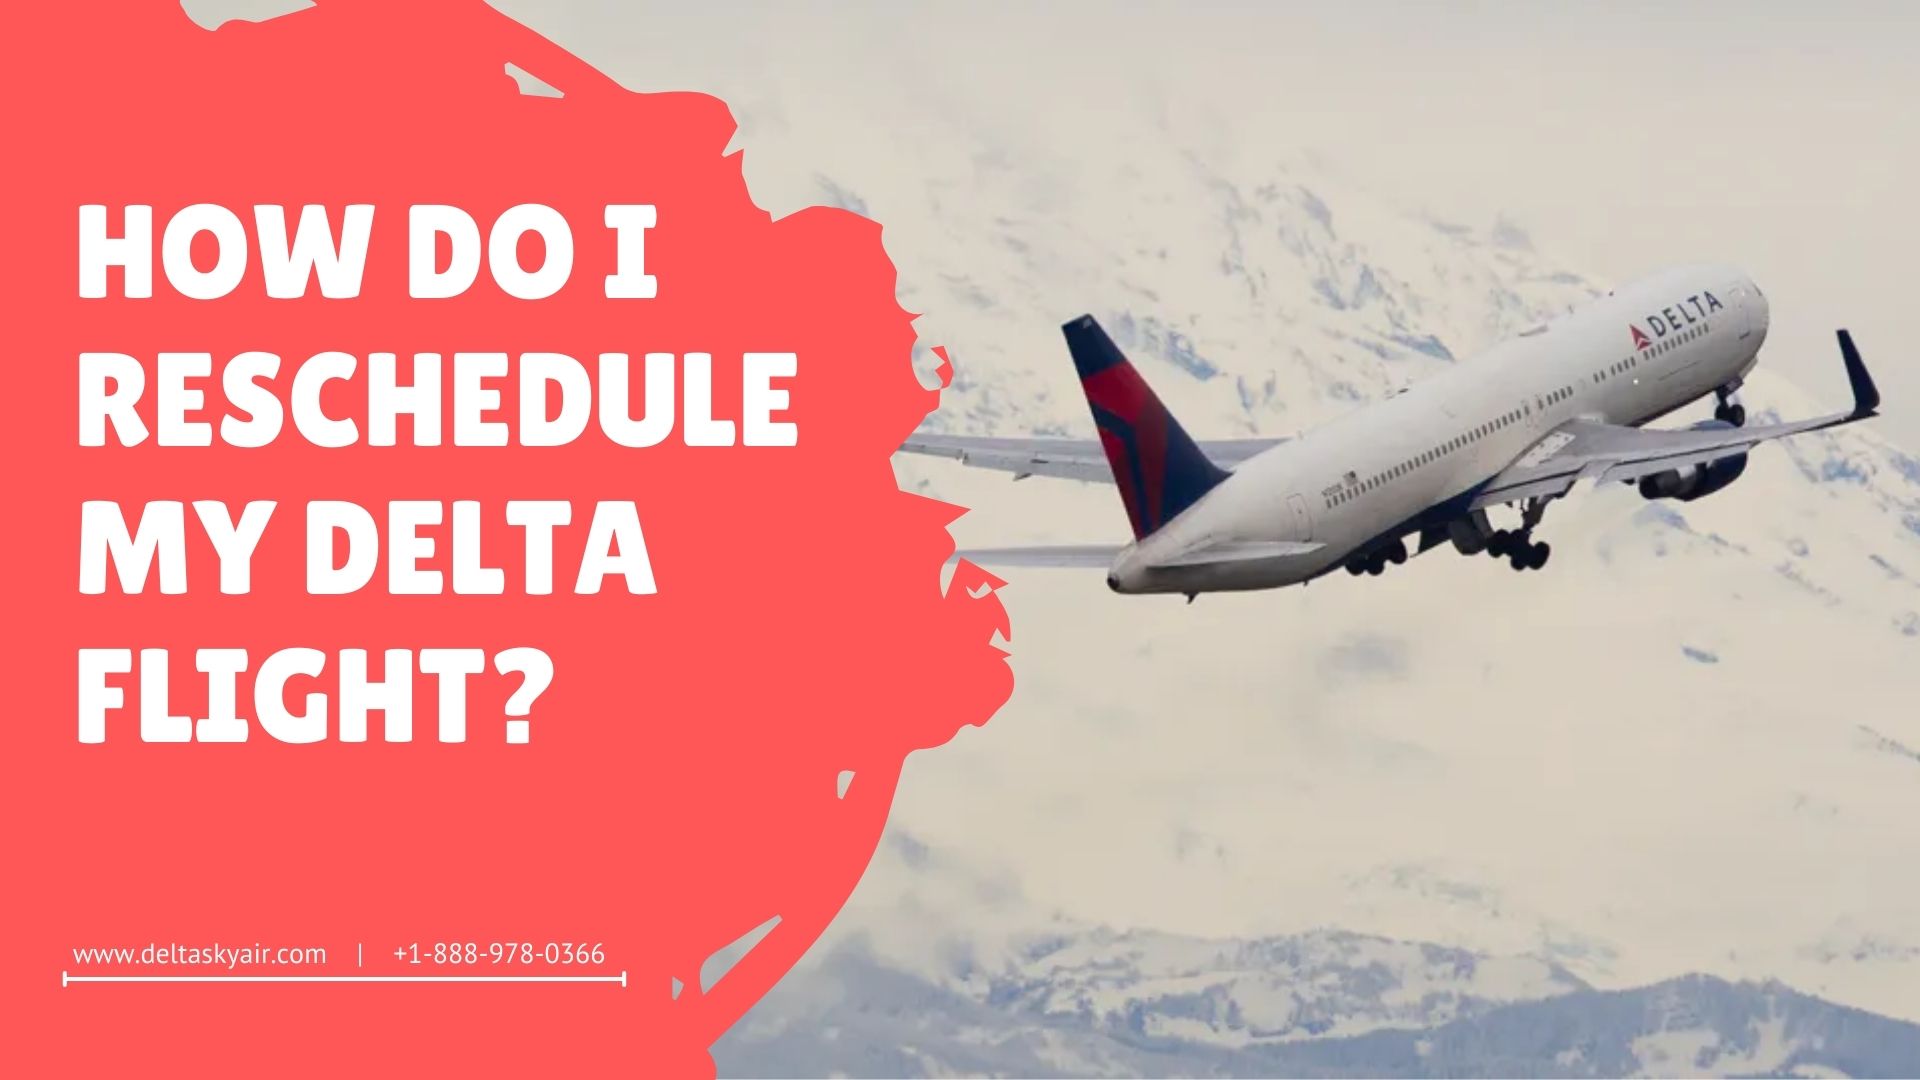 How do I reschedule my Delta flight